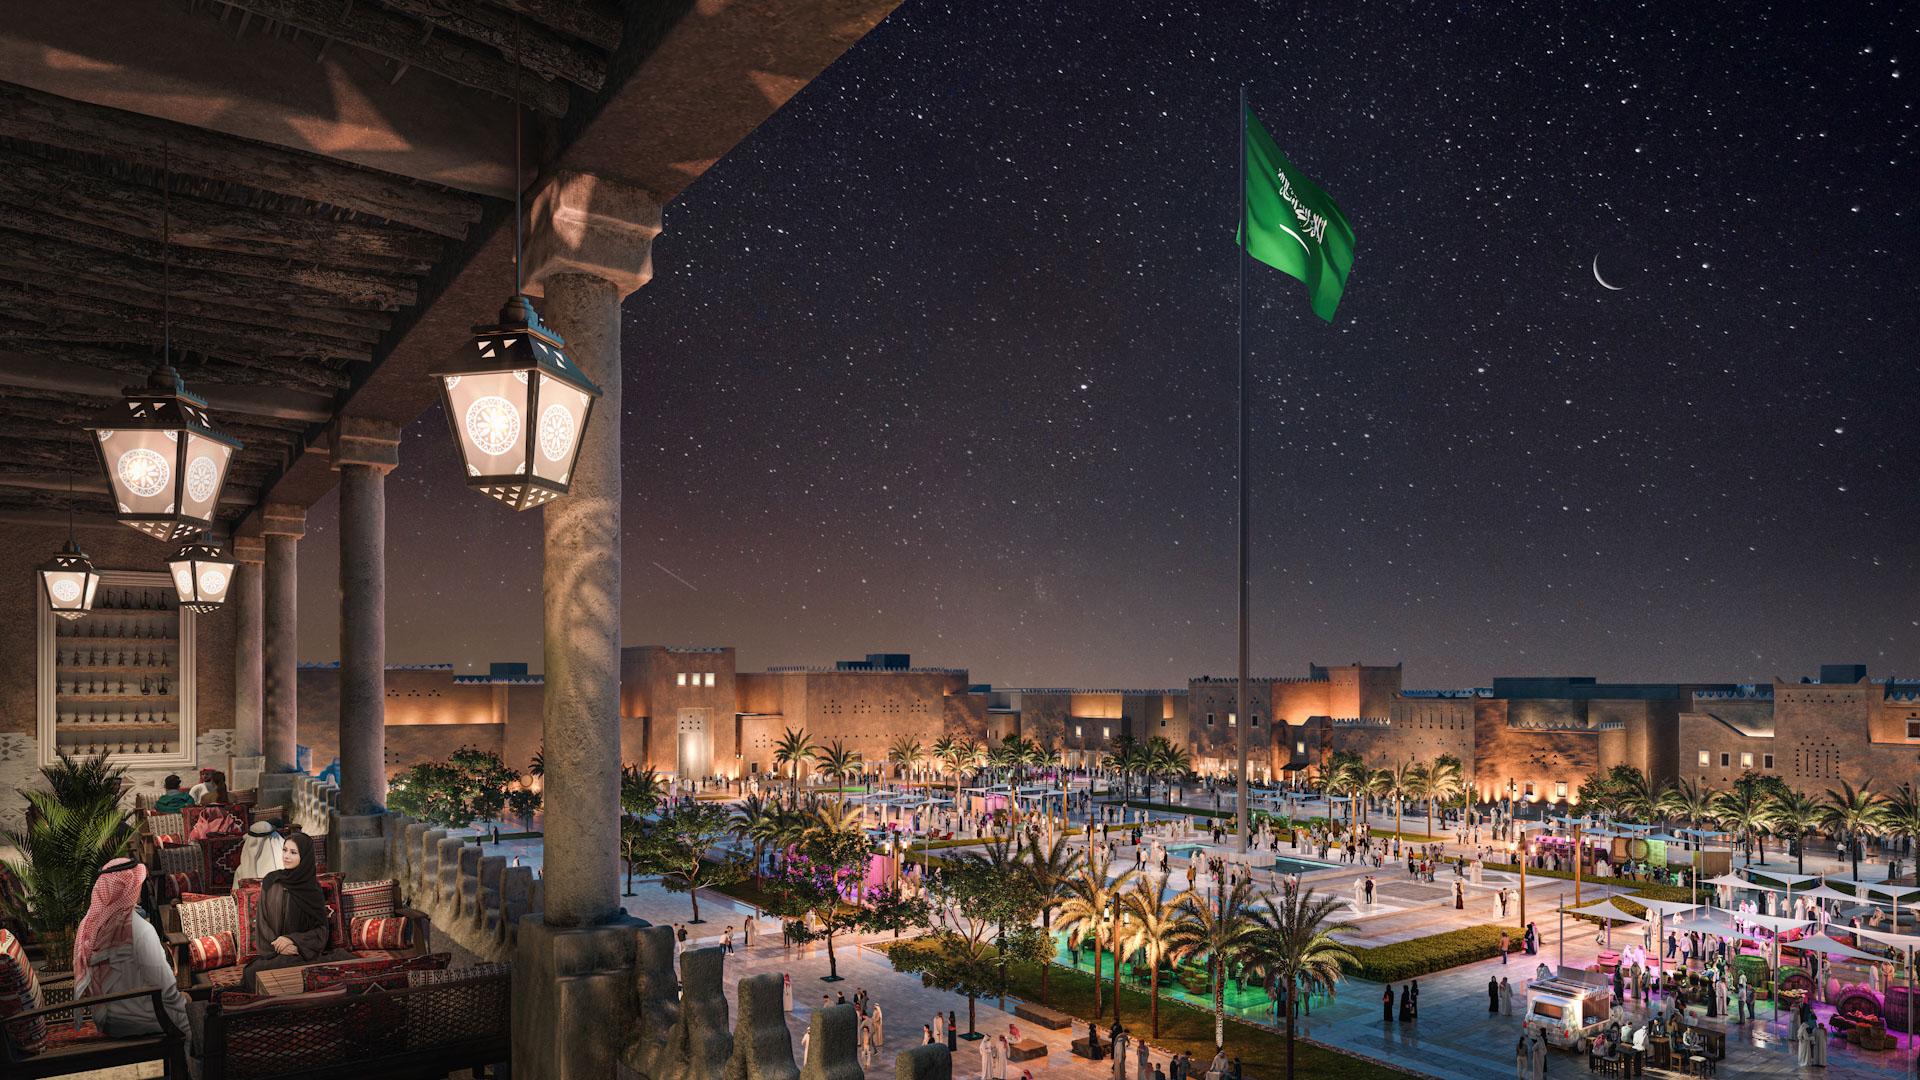 Riyadh Diriyah Square 